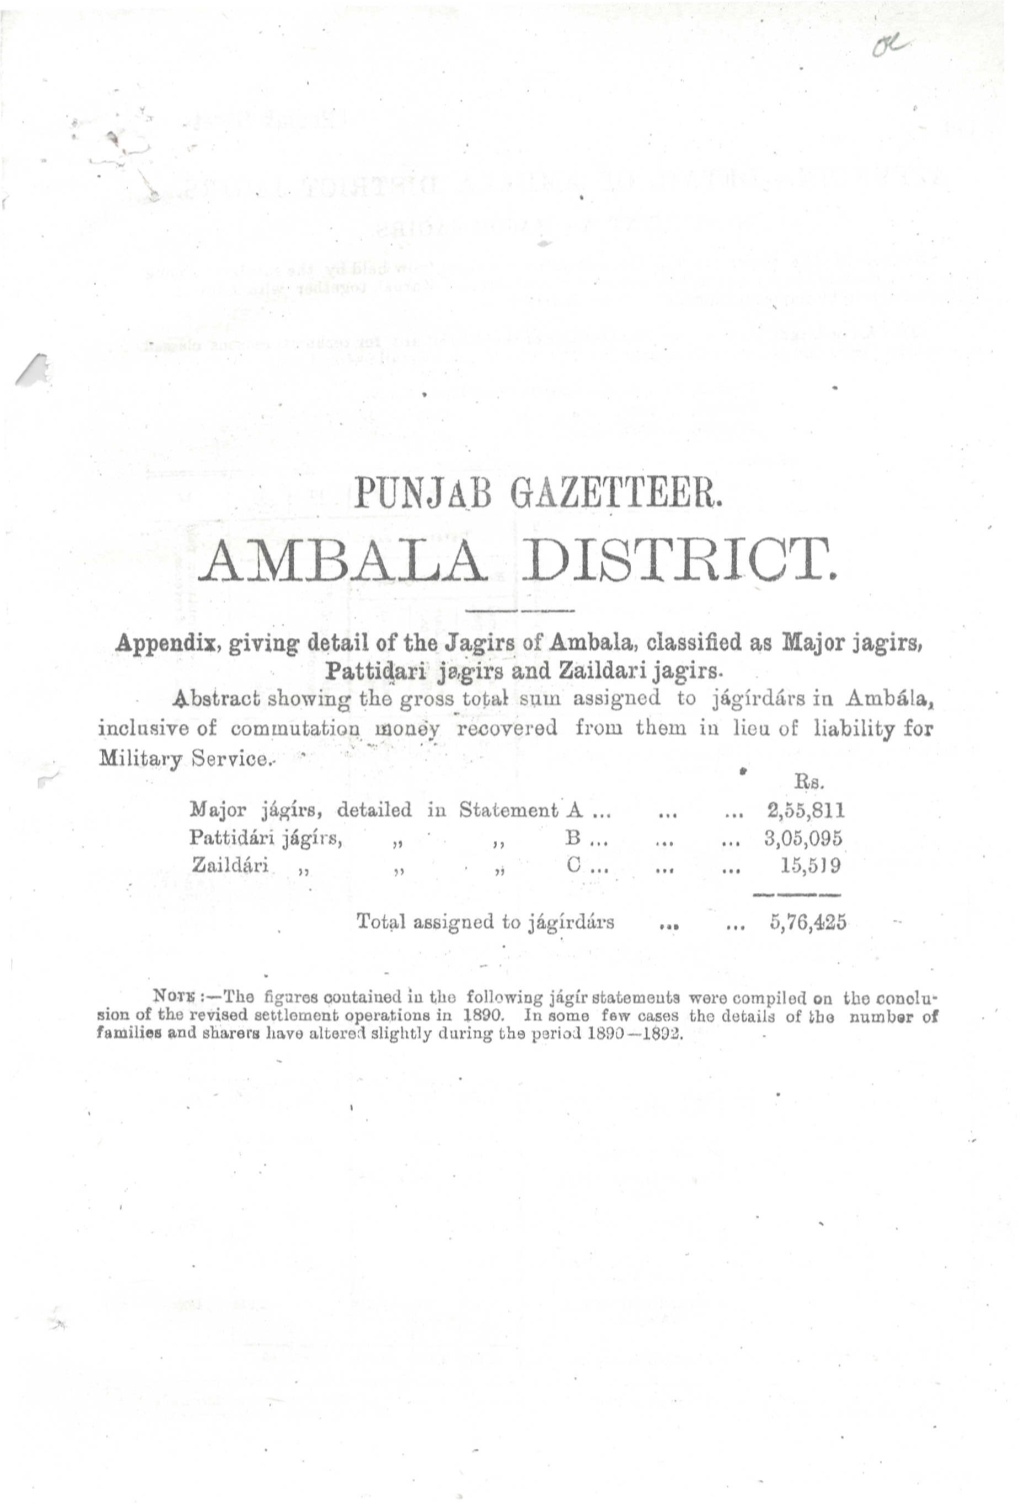 Ambala District